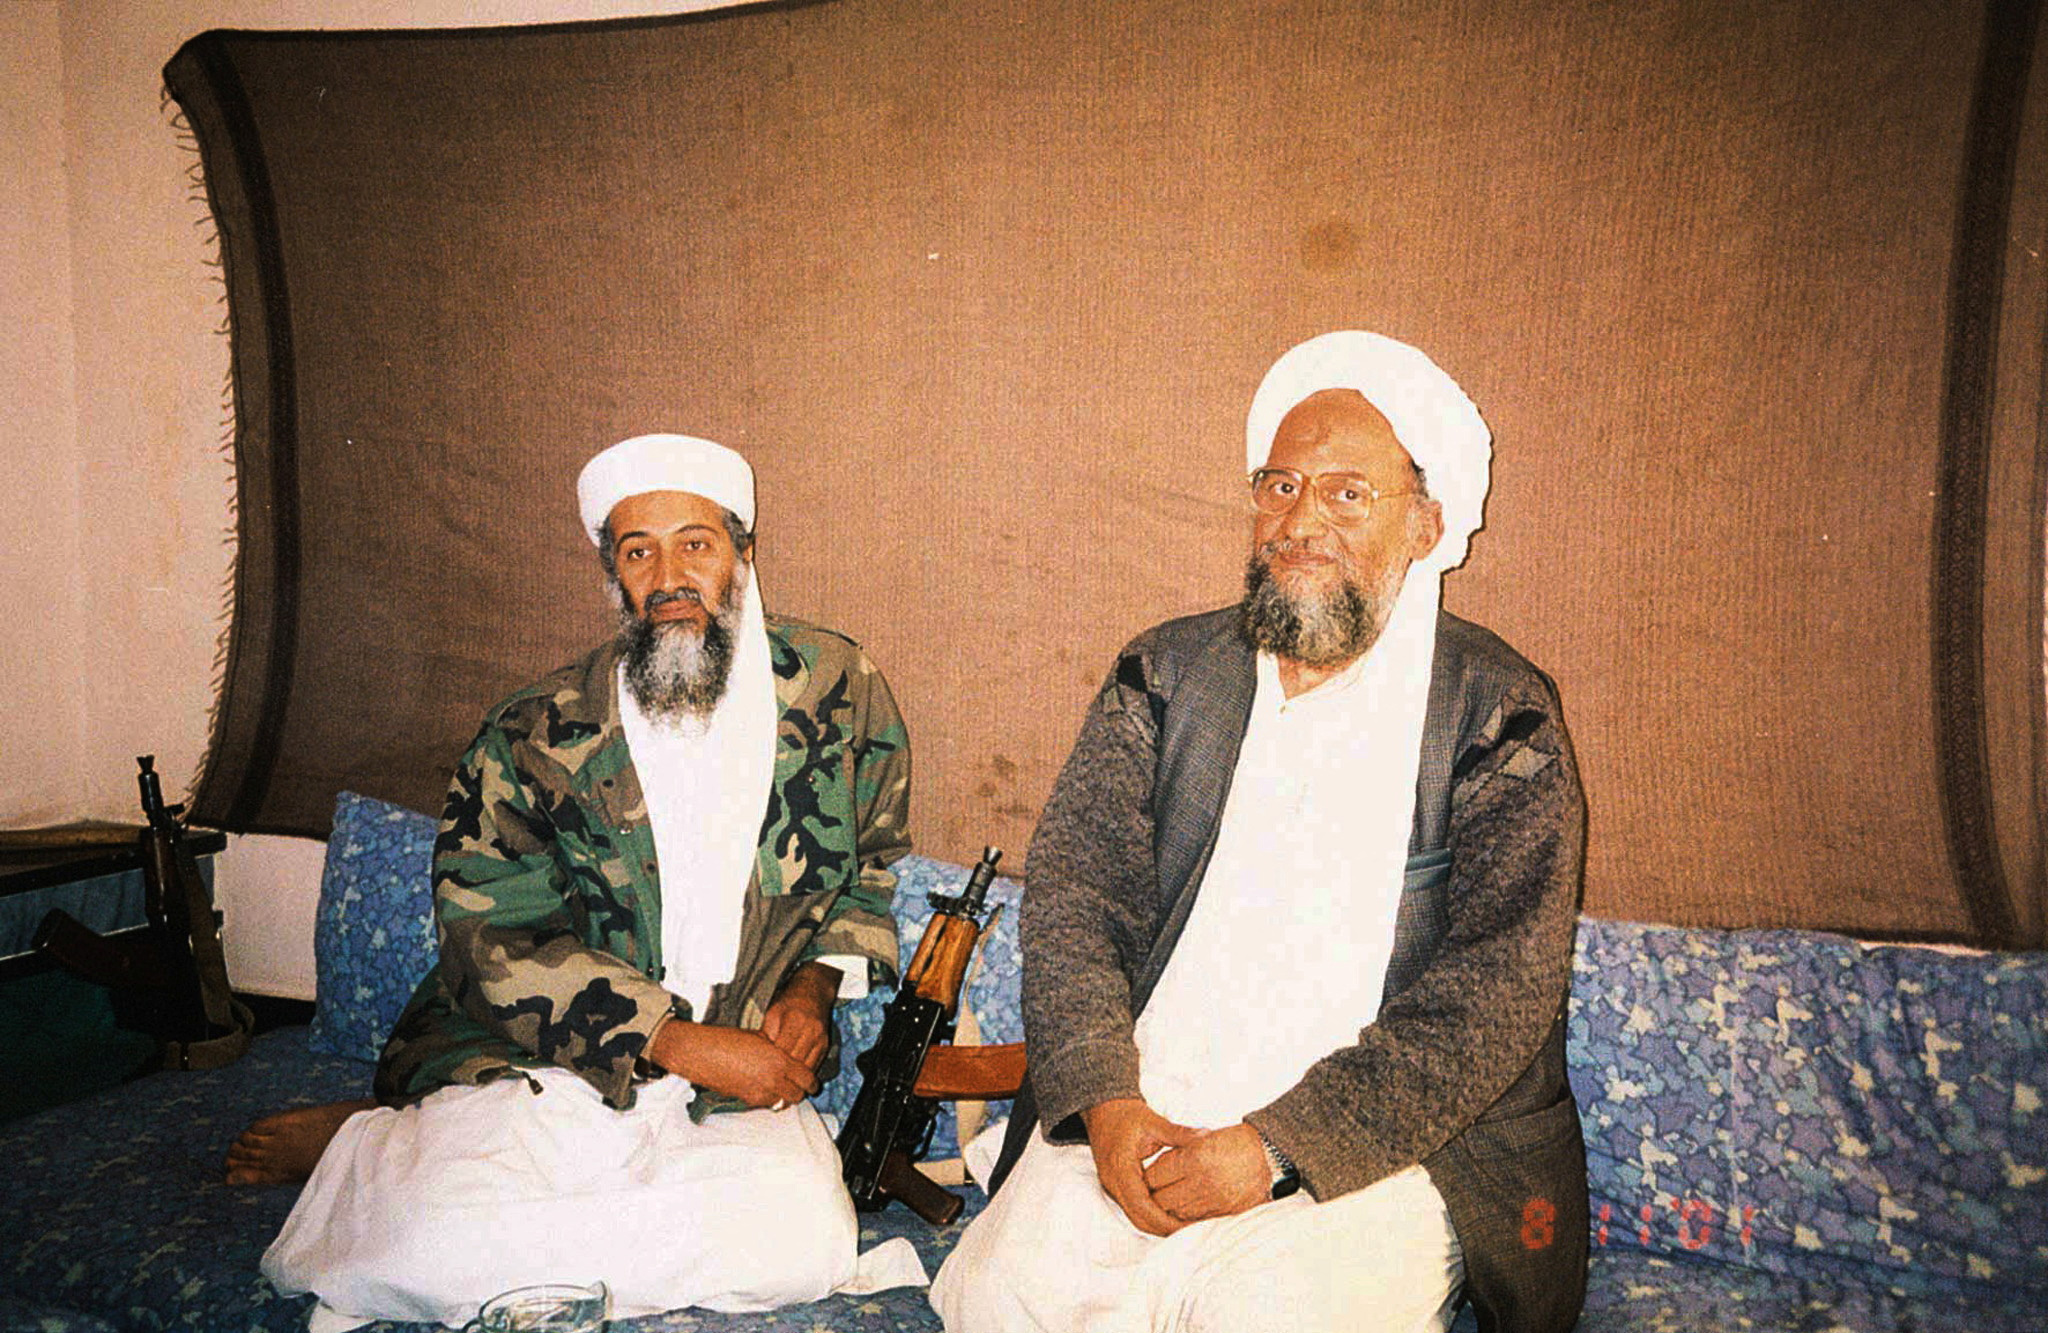 Al-Zawahiri: Osama bin Laden’s successor killed